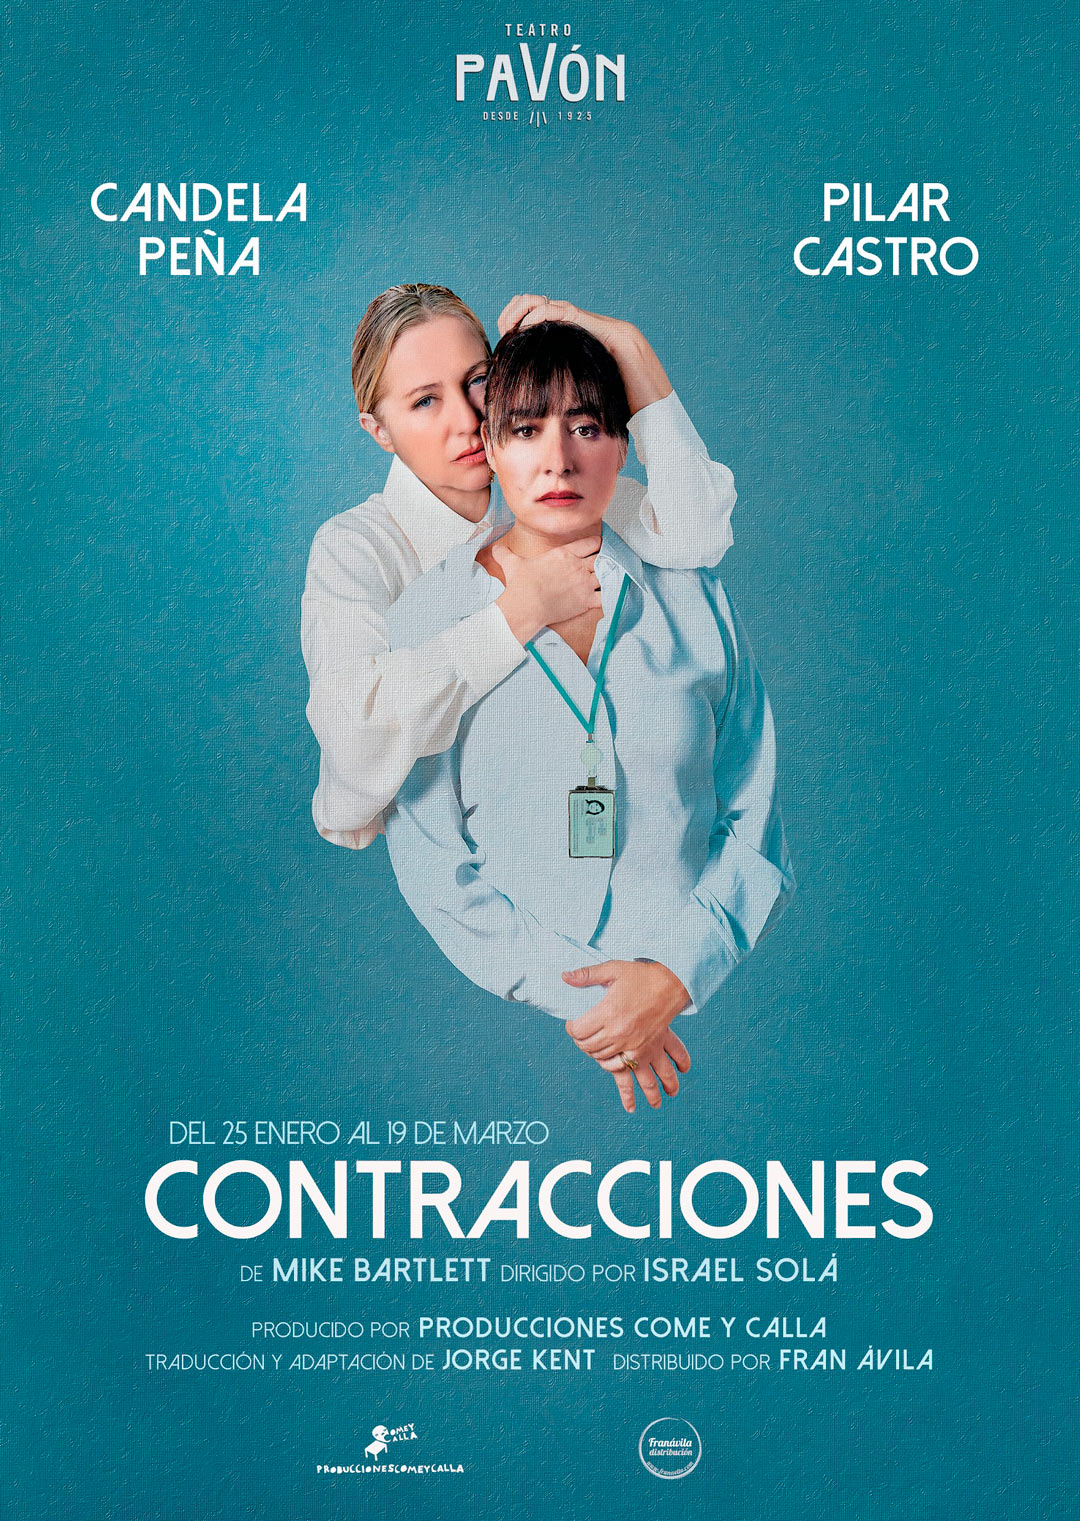 Contracciones. Con Candela Peña y Pilar Castro